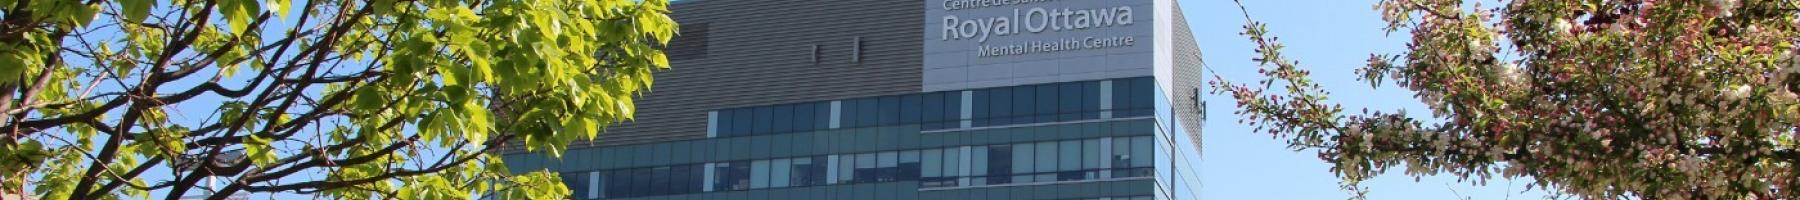 L'édifice principale du Centre de santé mentale Royal Ottawa